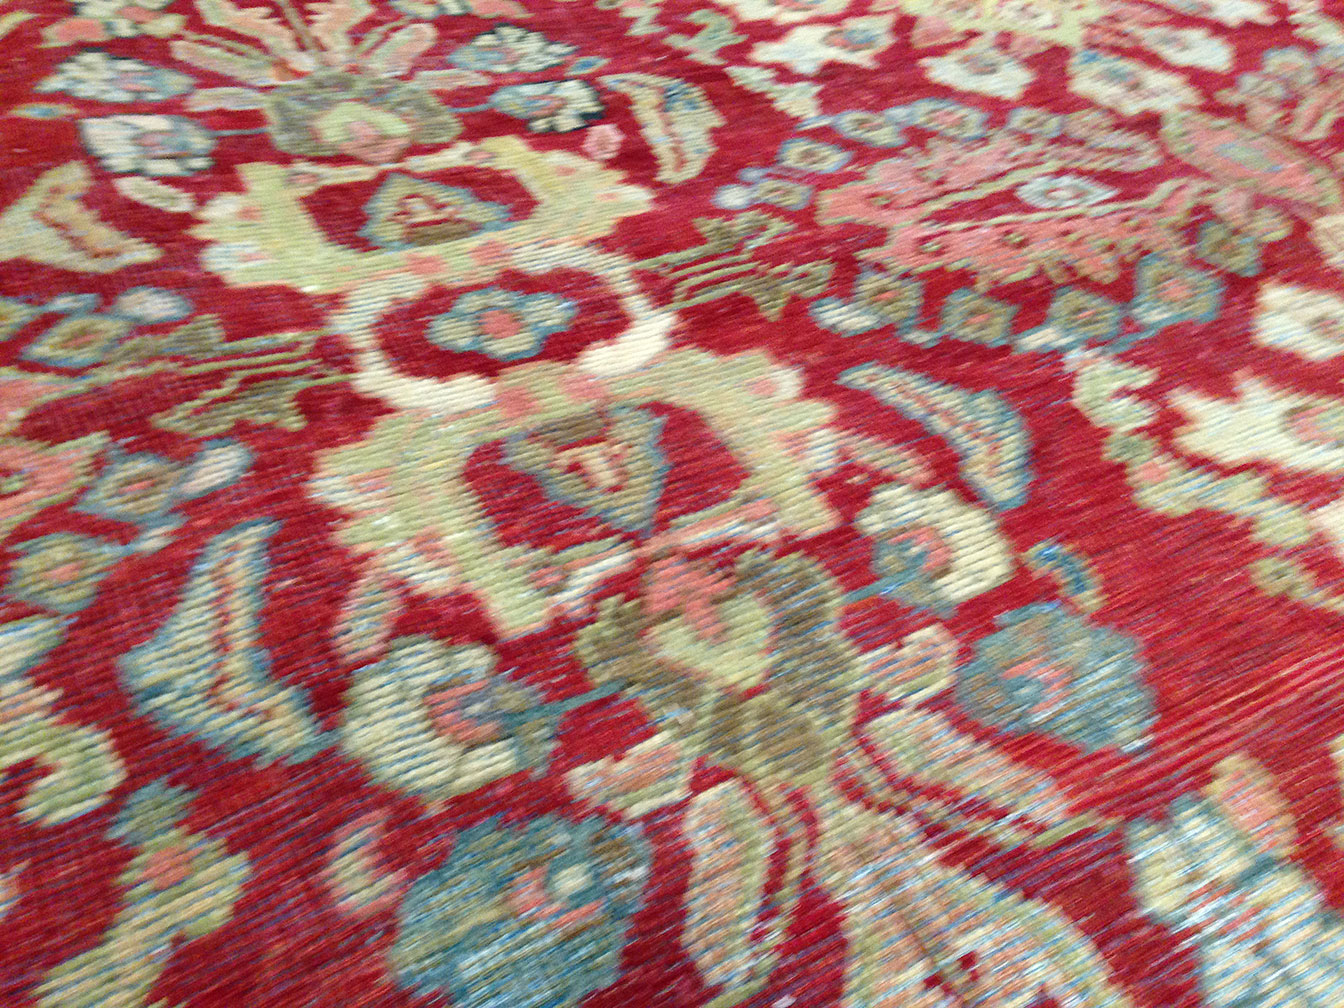 Antique mahal Carpet - # 9897